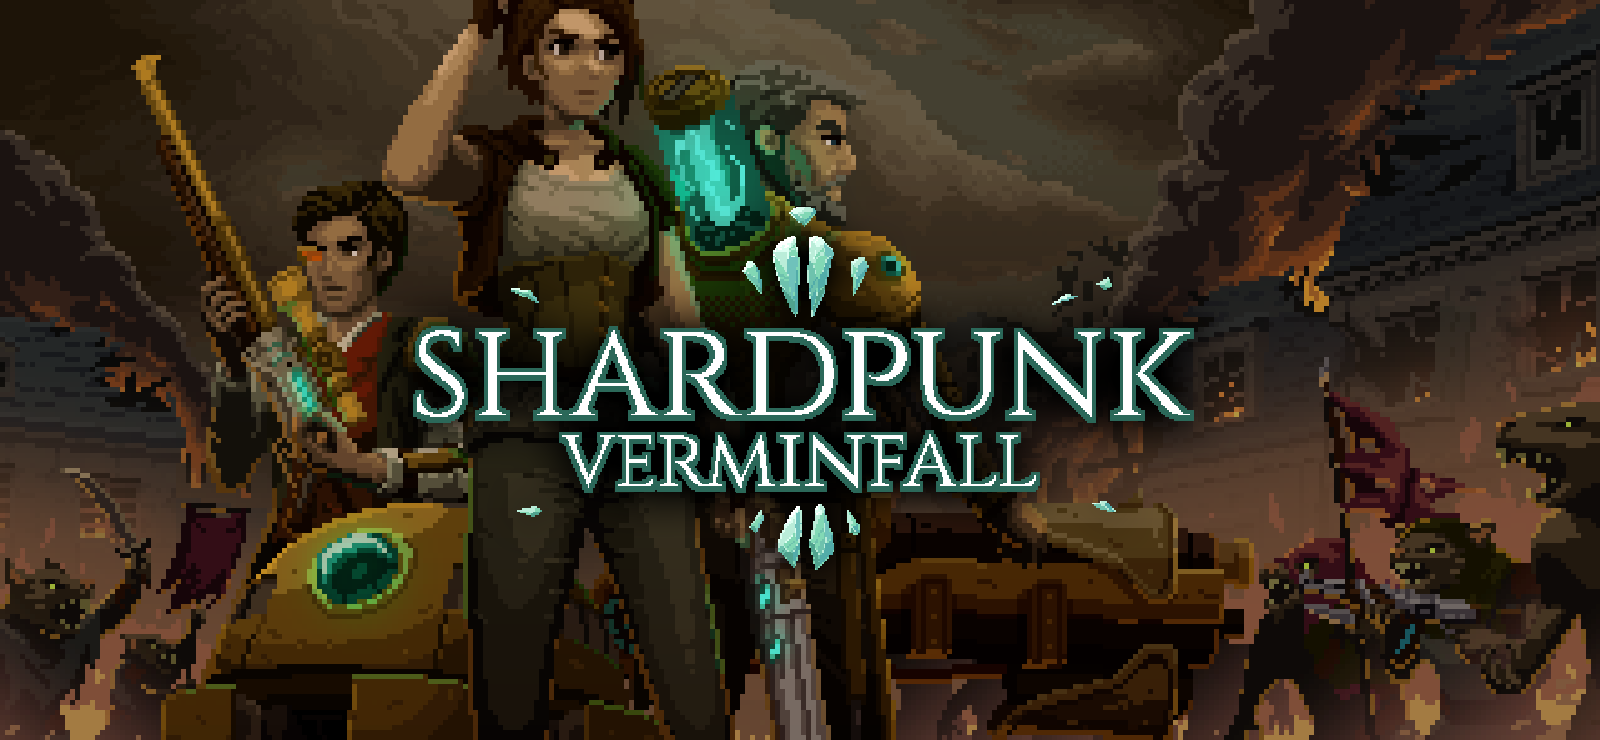 Shardpunk: Verminfall, presto in arrivo su PC 4